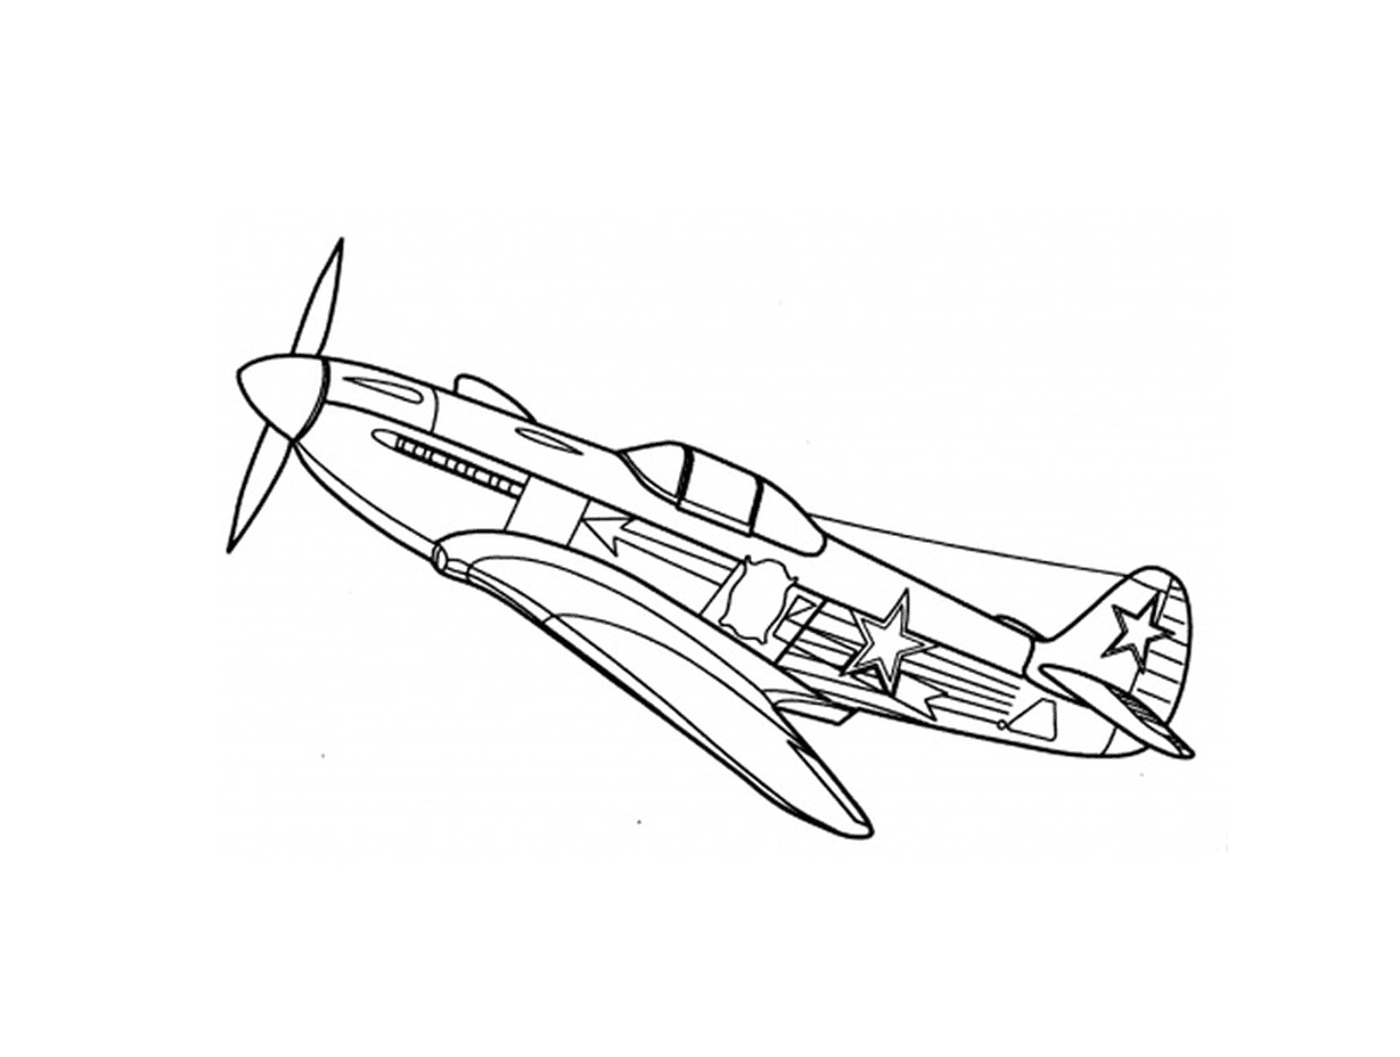  Un aereo da guerra è disegnato 